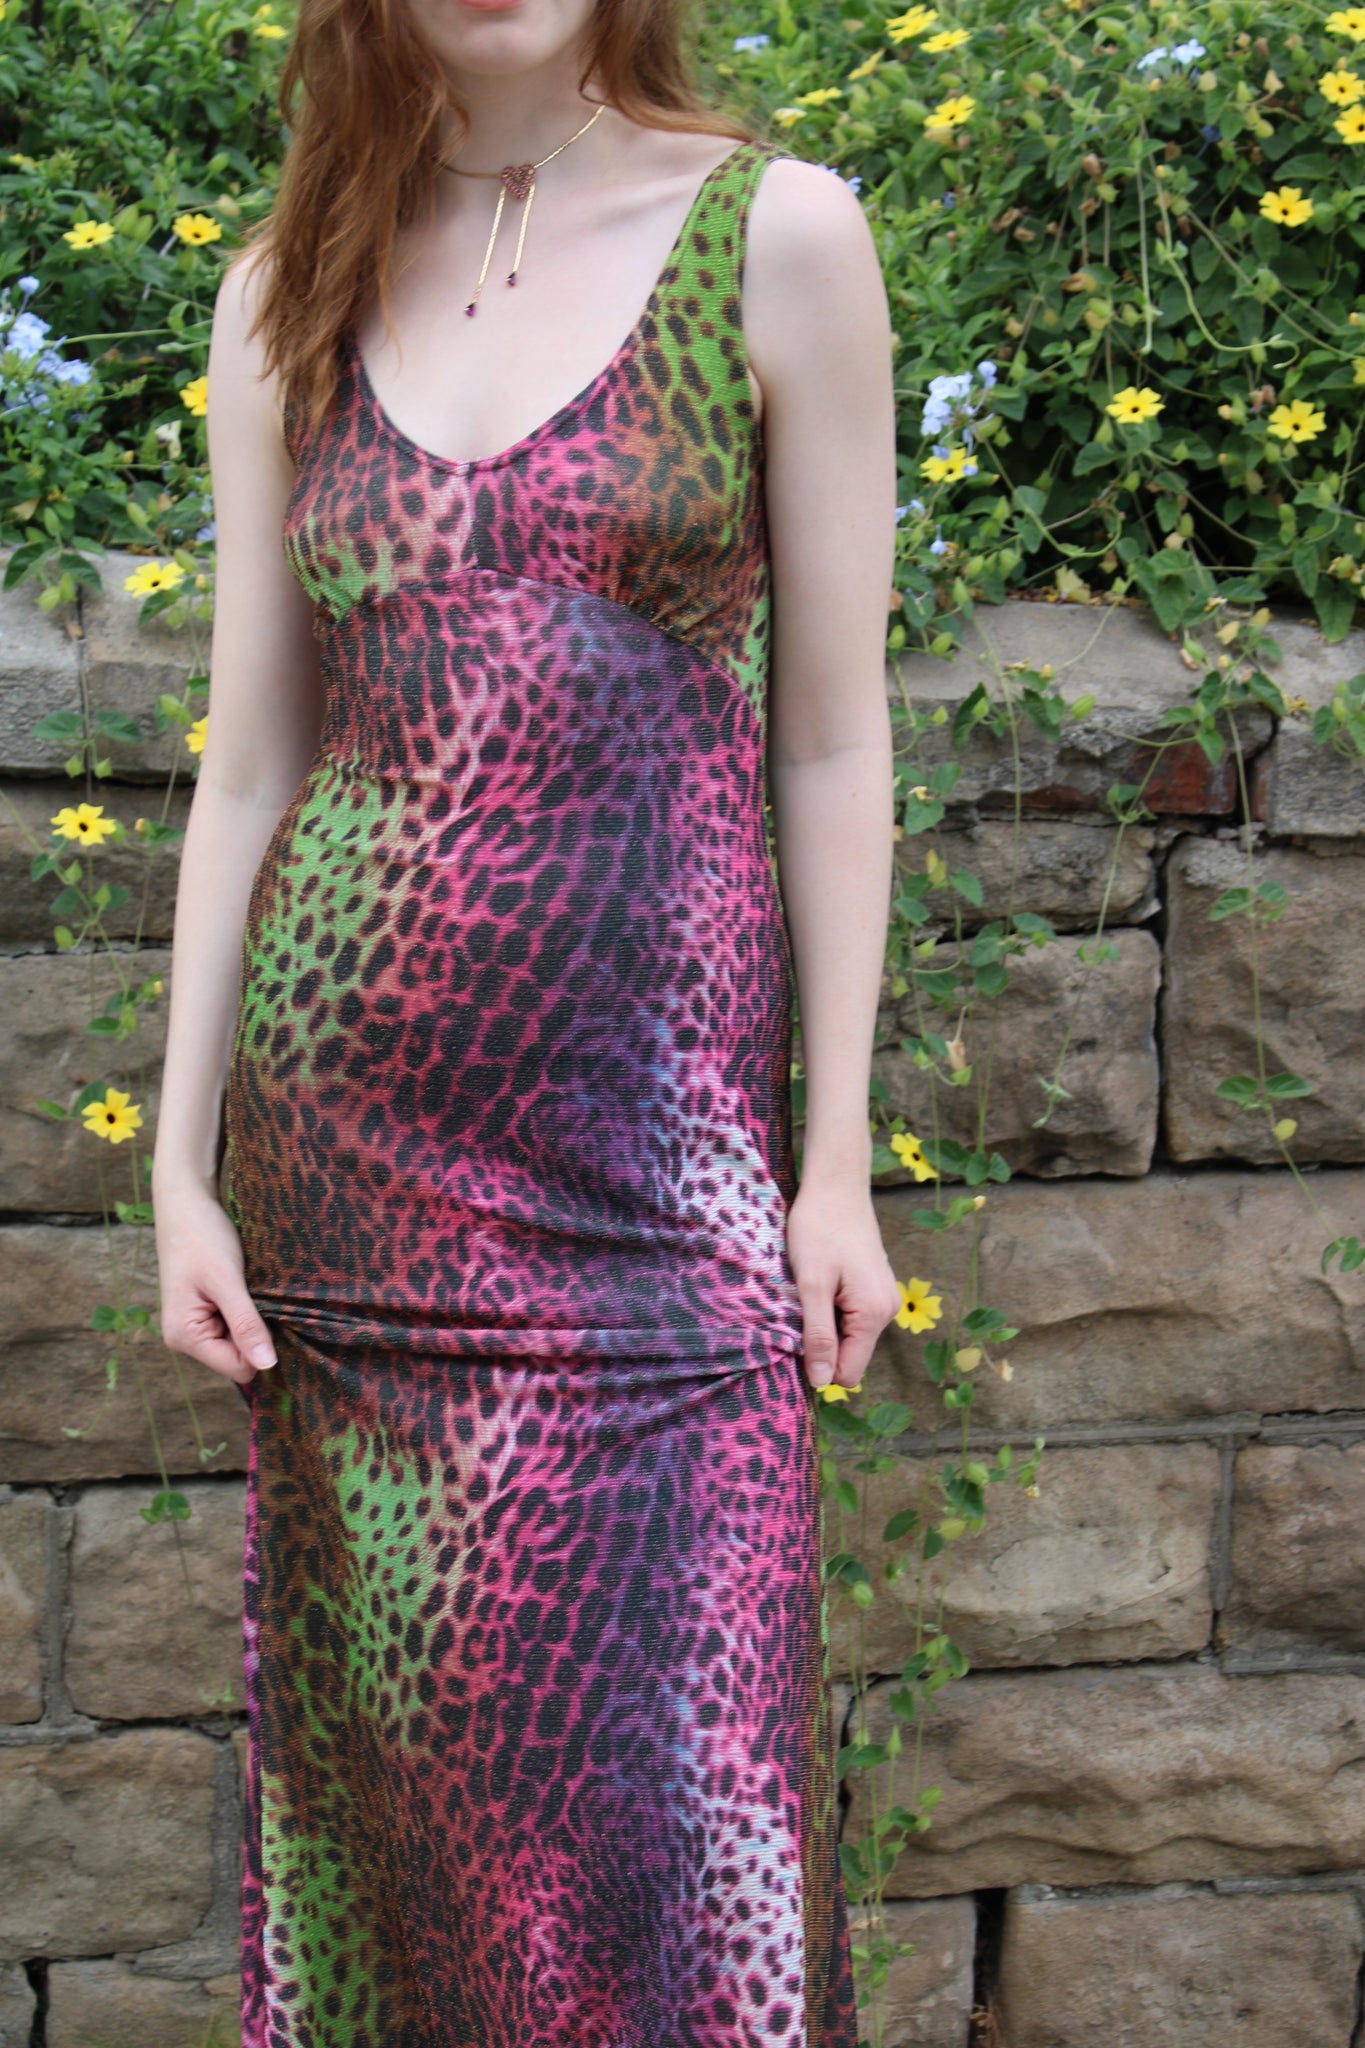 Steph's Rainbow Dress